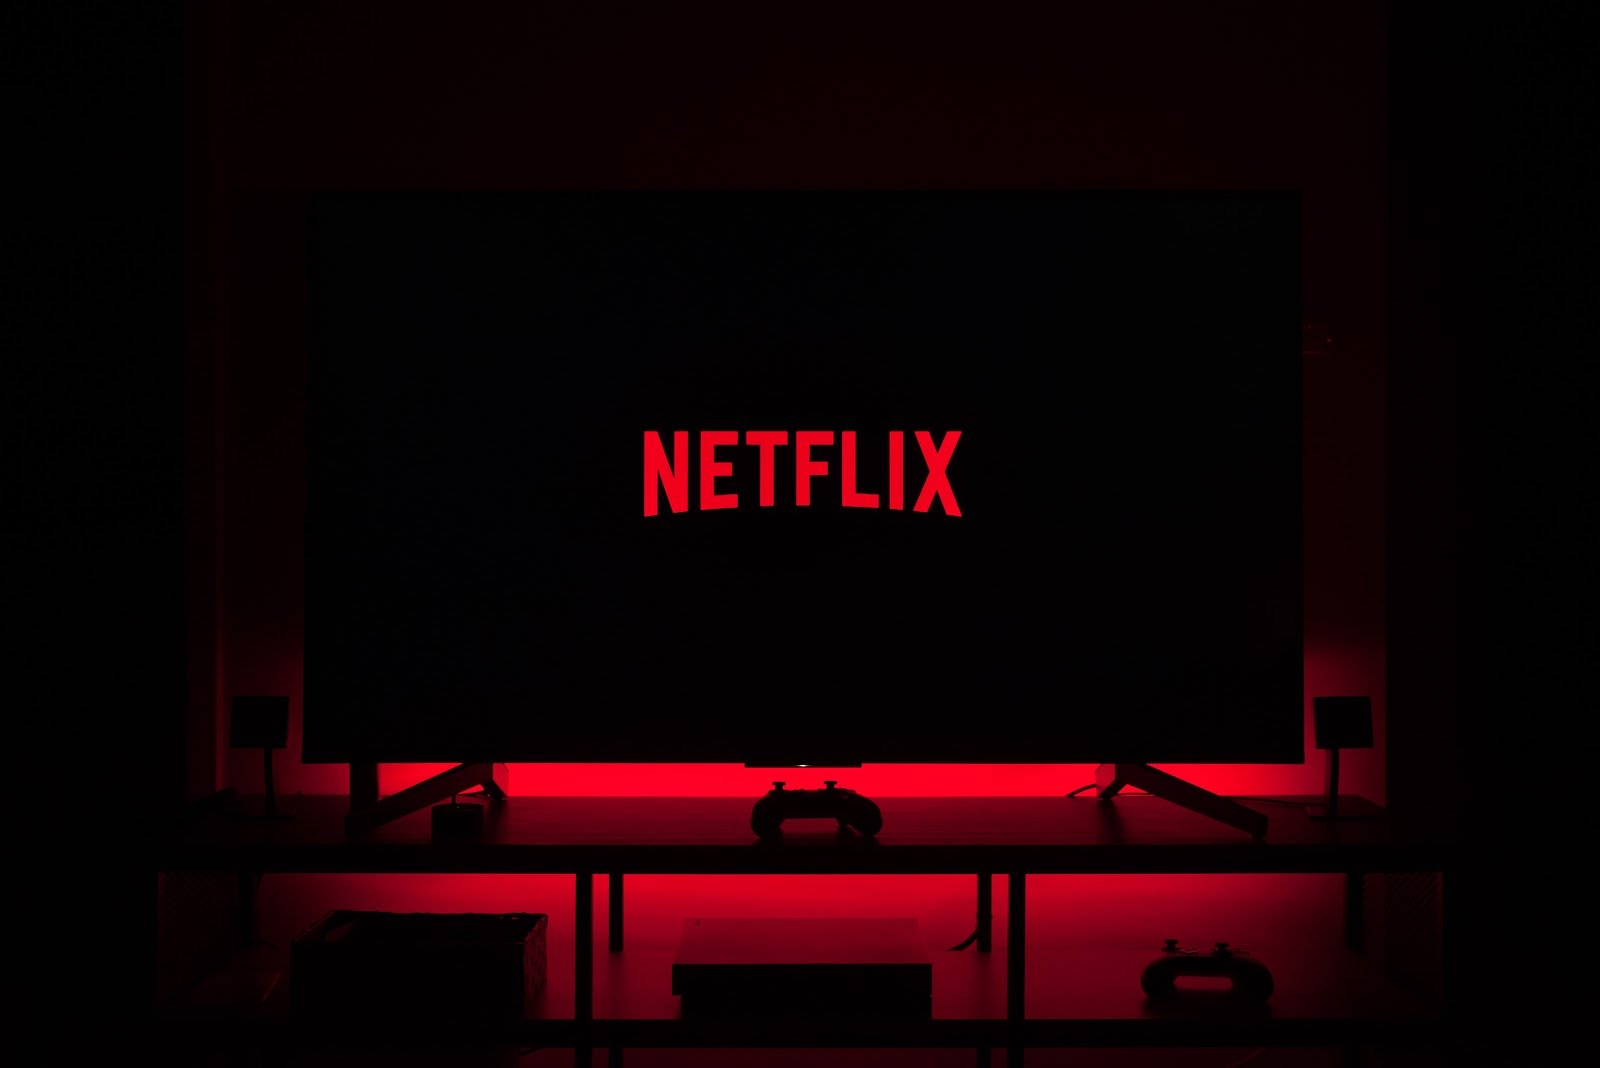 Netflix-ը սփոյլերներով գովազդային վահանակներով փորձում է մարդկանց տանը պահել